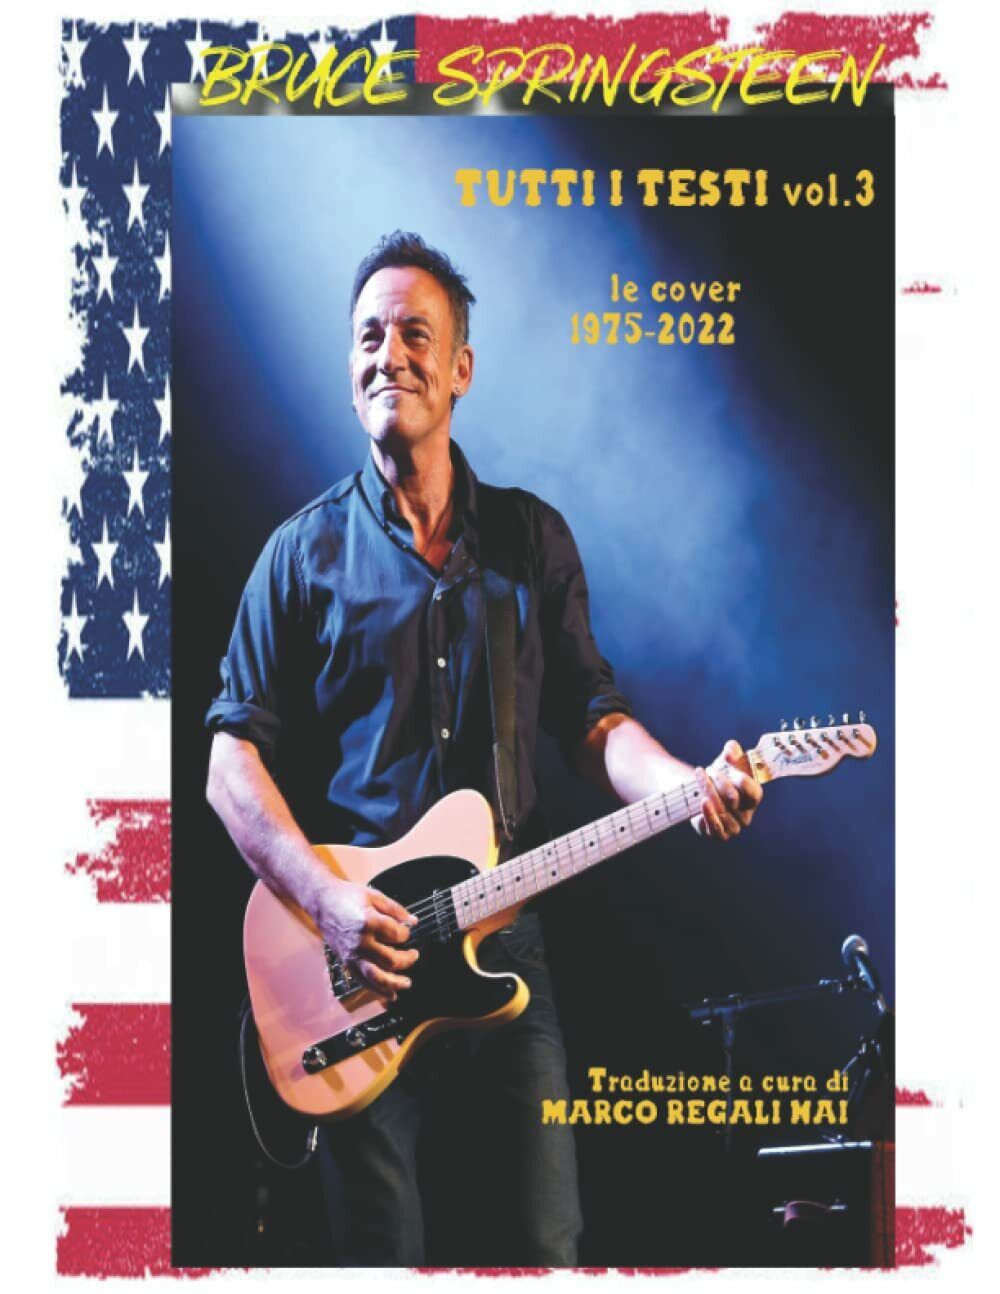 Bruce Springsteen - Tutti i testi vol.3: le cover 1975-2022 di Marco Regali Nai,